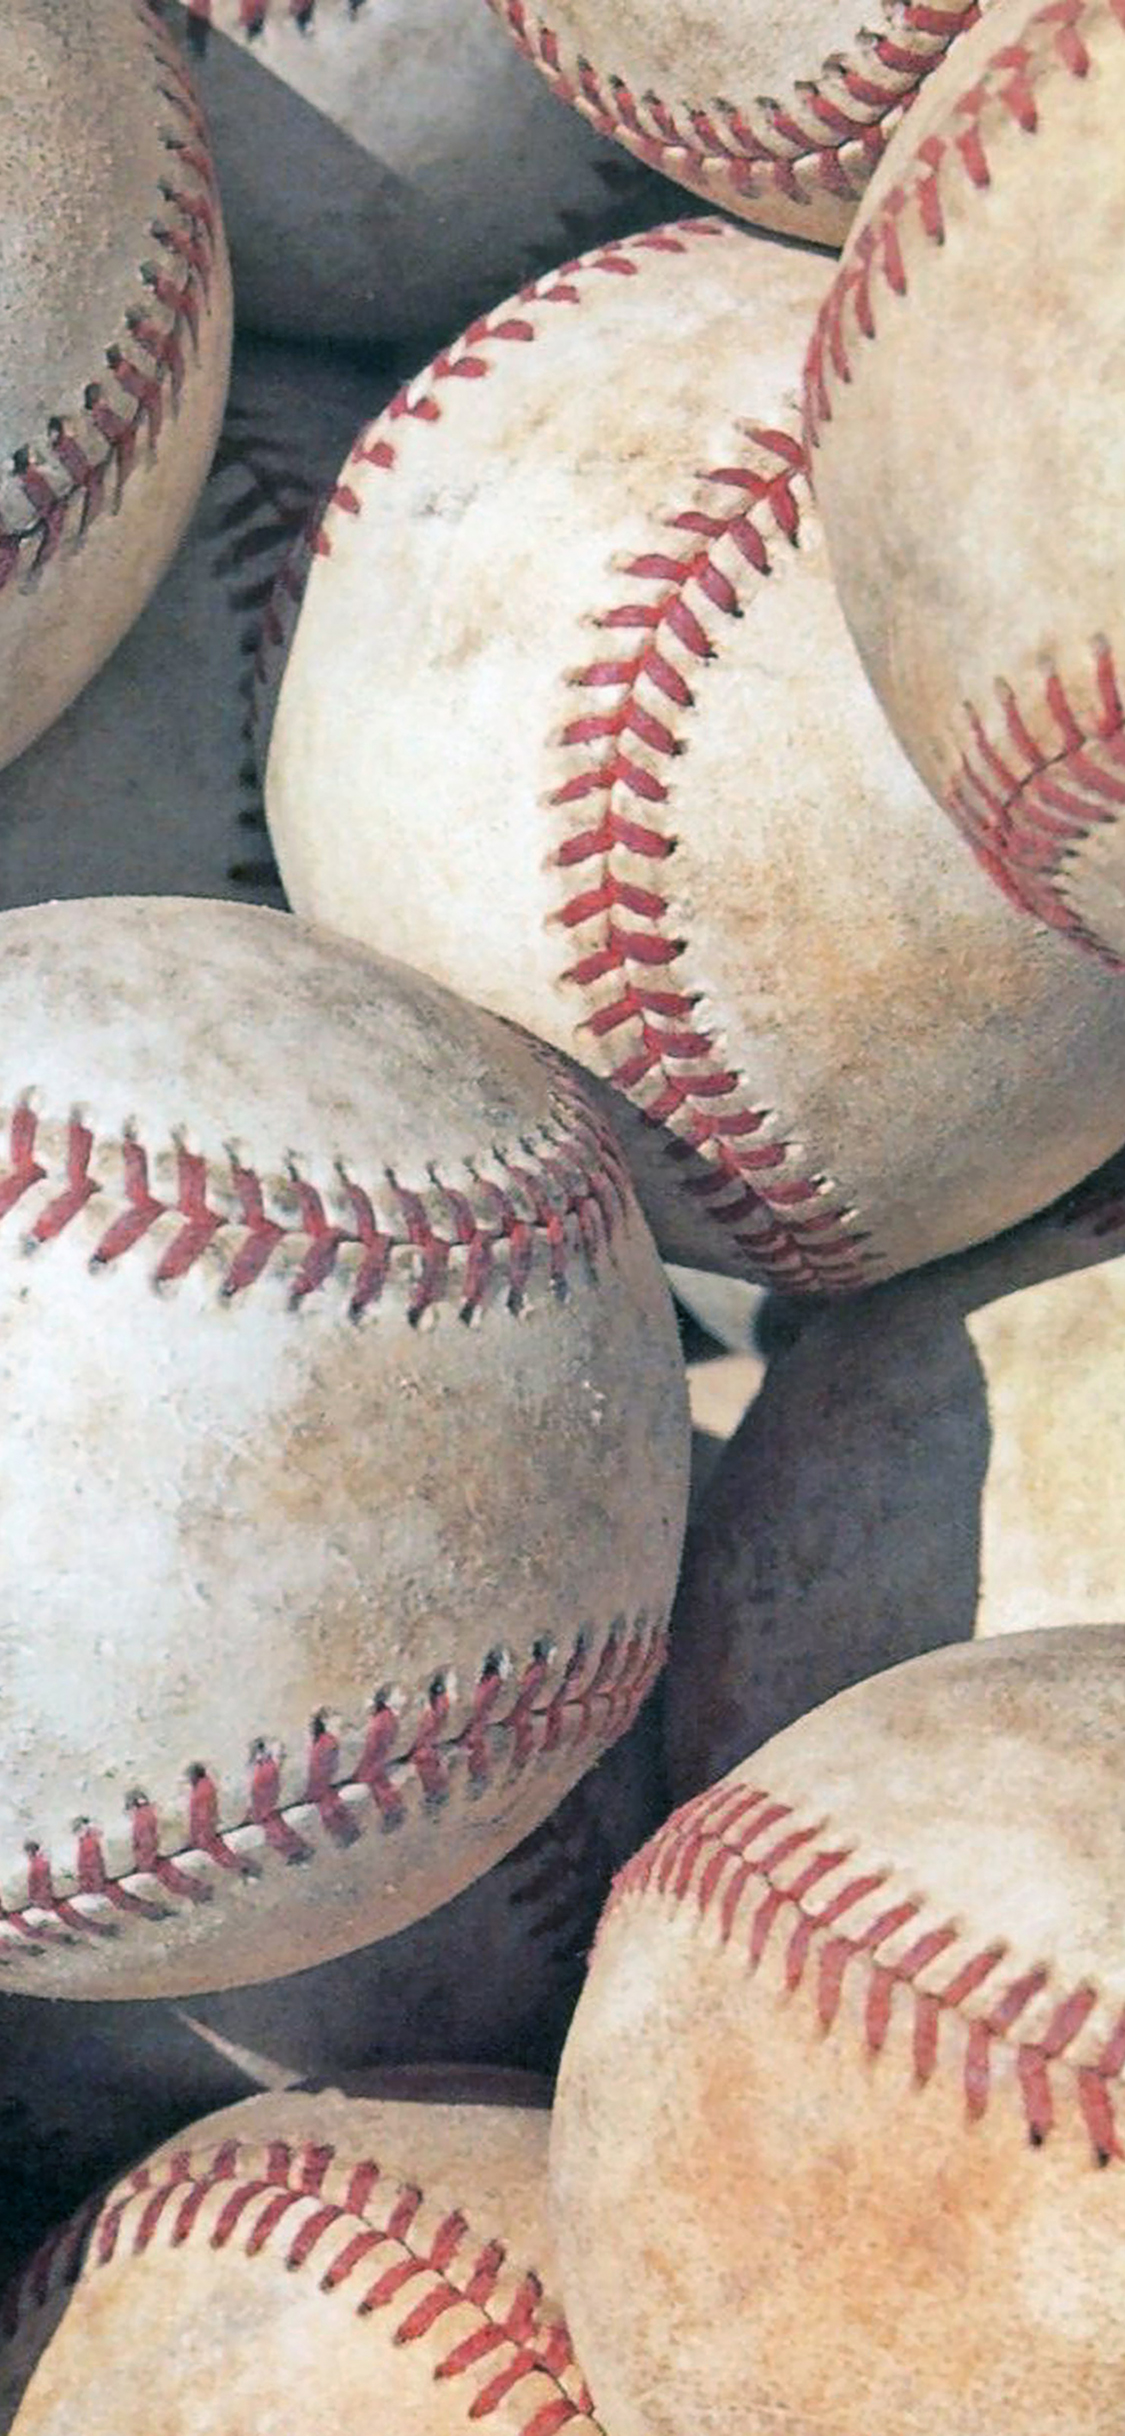 Iphone X Wallpaper Baseball - 1125x2436 Wallpaper 